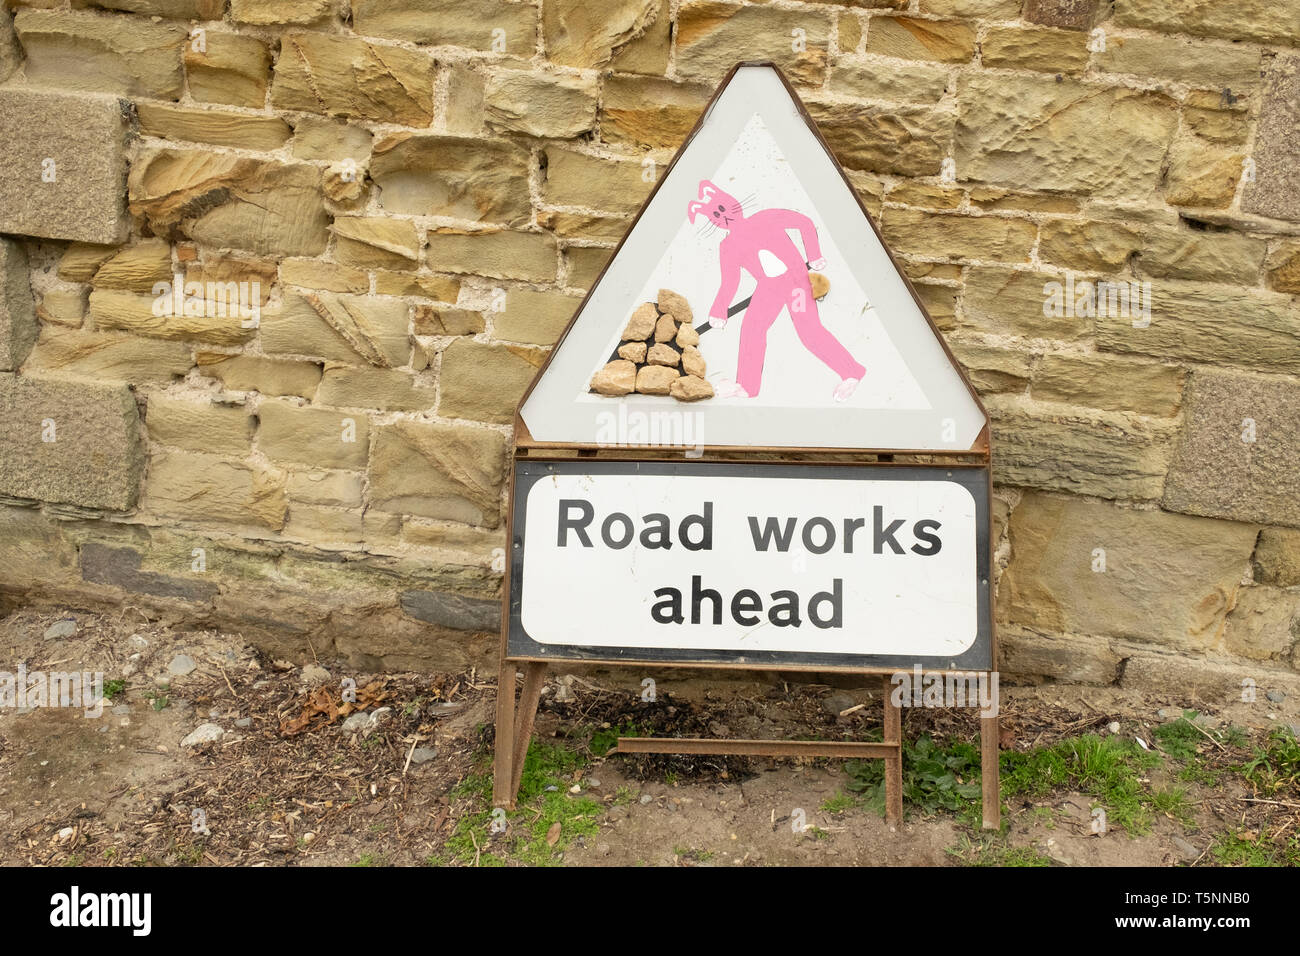 Geändert Baustellen Schild mit rosa Kaninchen Abbildung, in Cornwall, England Stockfoto